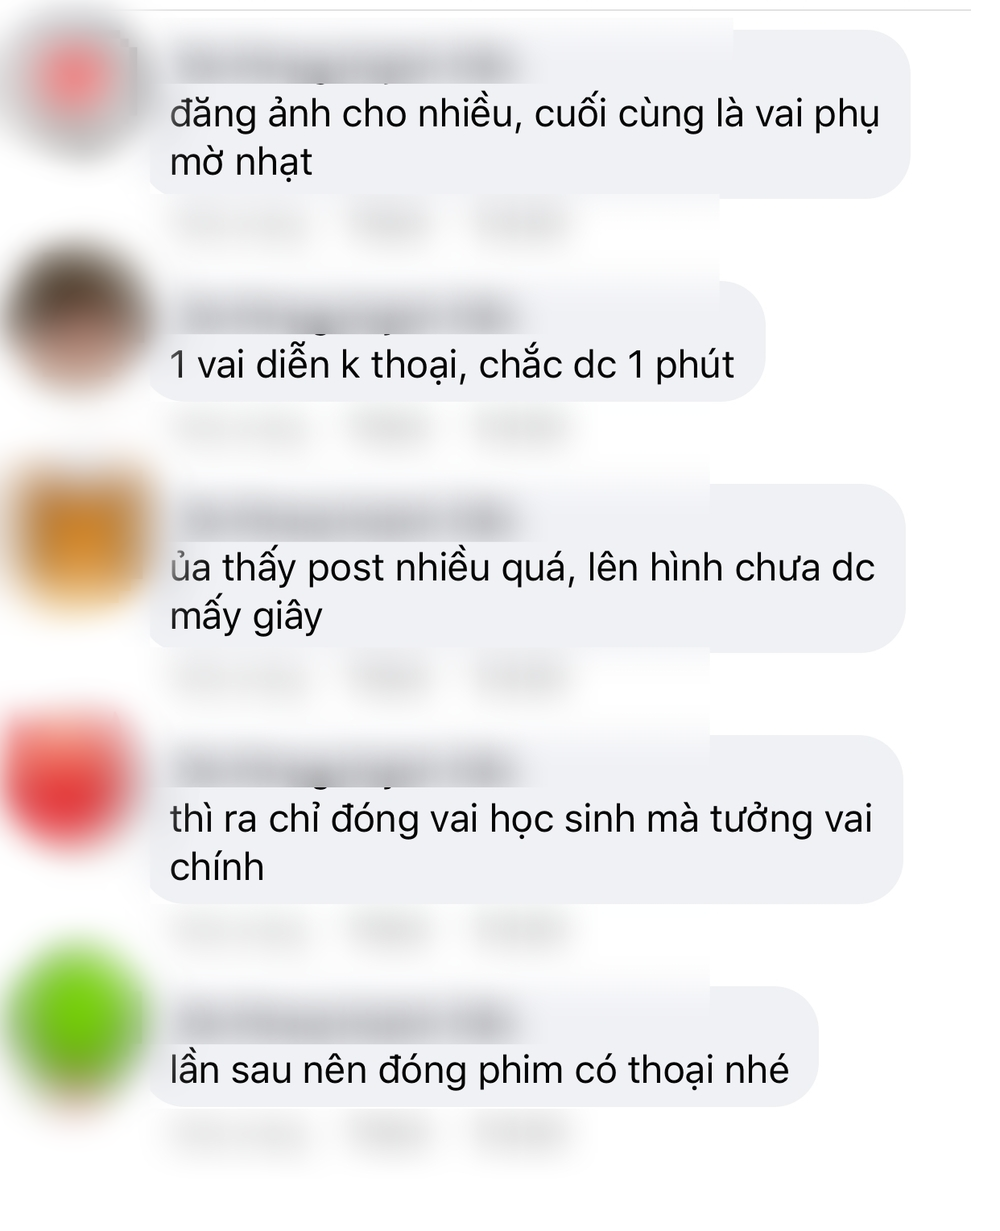  
Nhiều bình luận của cư dân mạng dành cho Trần Thanh Tâm (Ảnh: Facebook nhân vật)